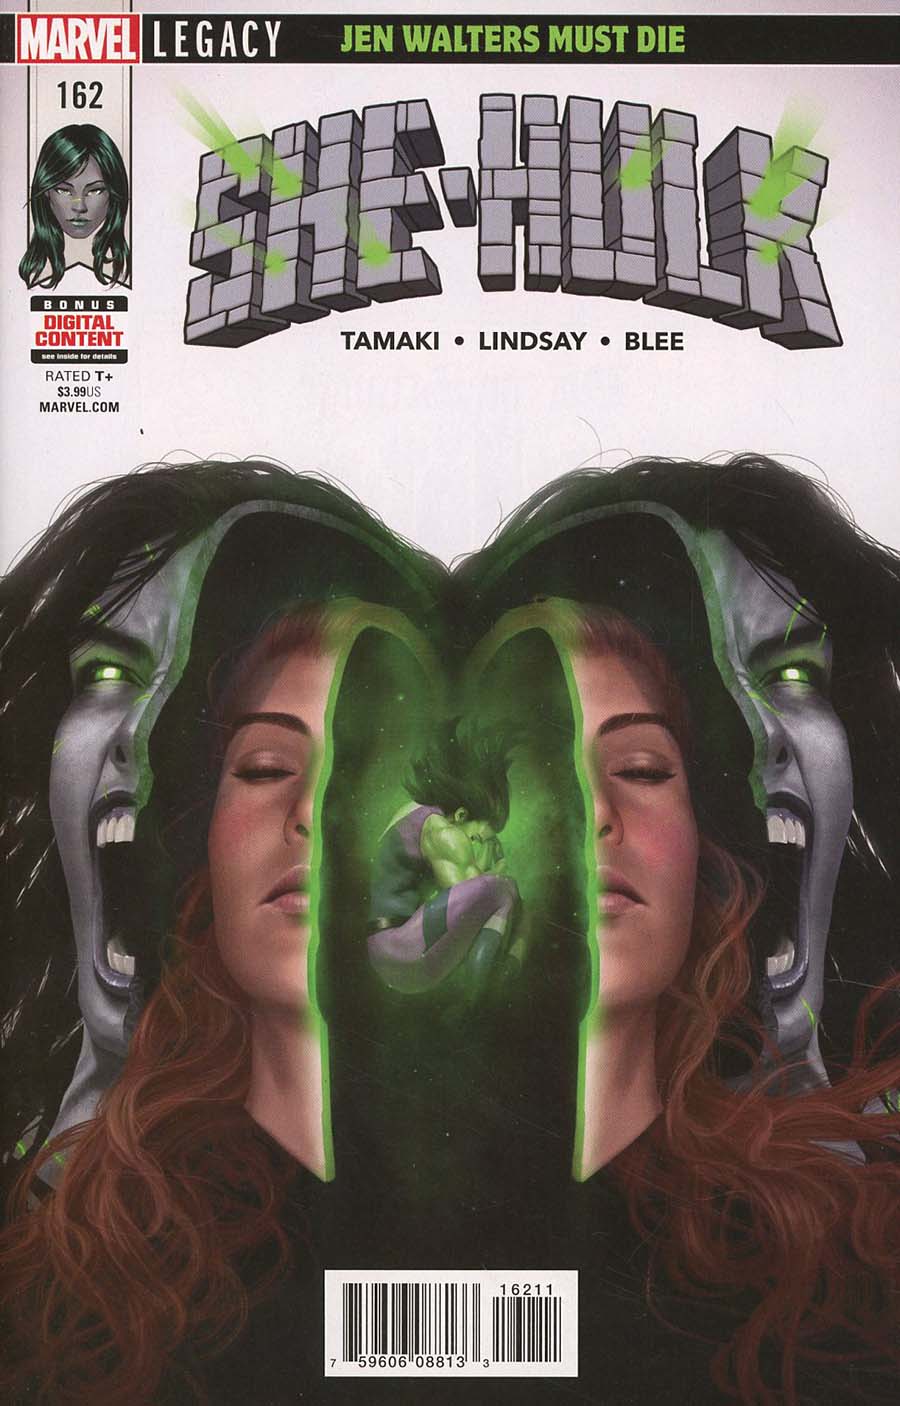 She-Hulk Vol 3 #162 (Marvel Legacy Tie-In)